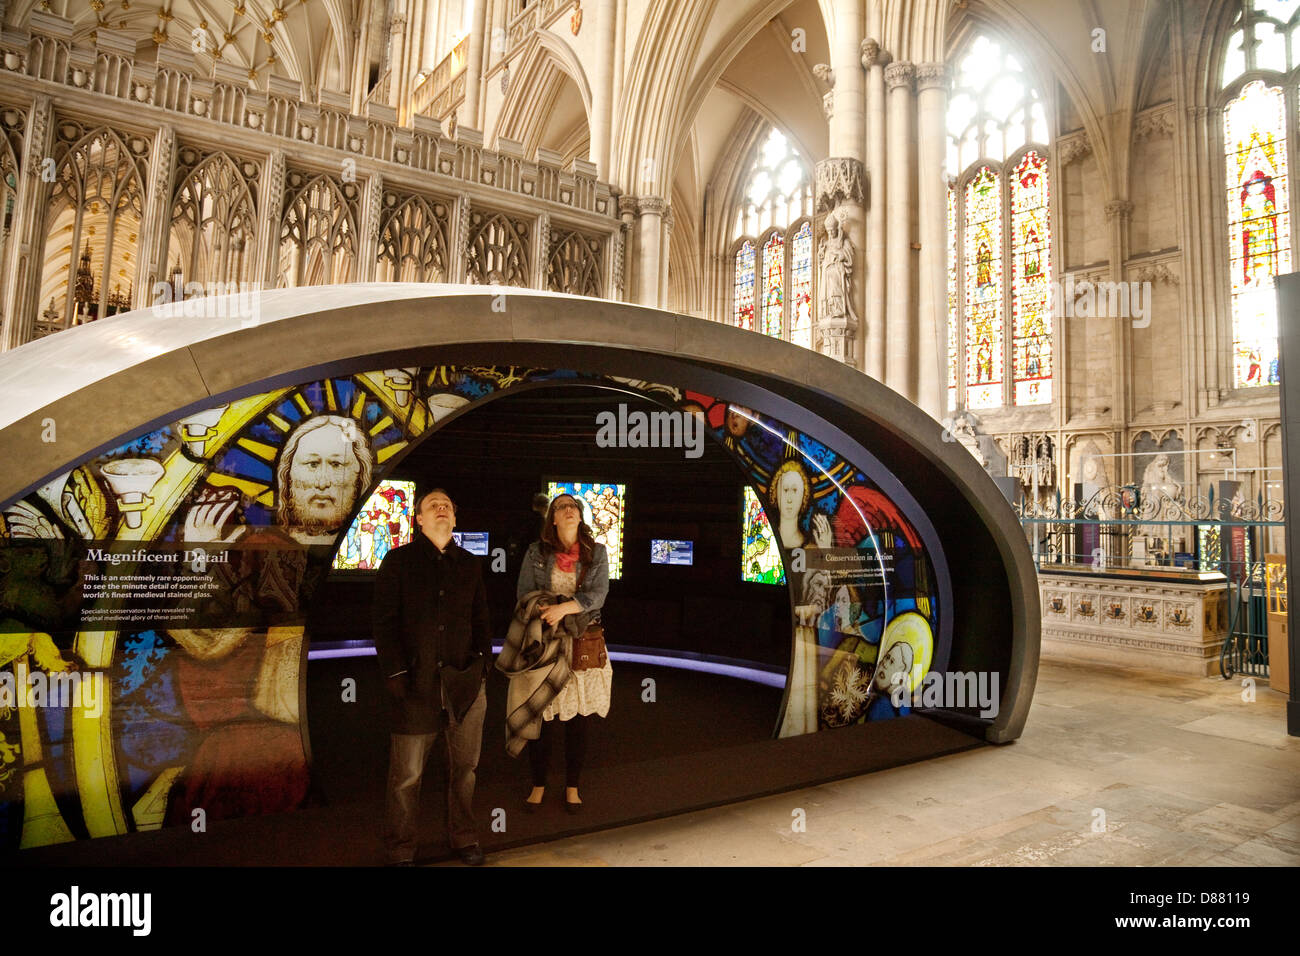 El Orbe, dando información sobre la catedral, el interior de la Catedral, La Catedral de York, York, Yorkshire, Reino Unido Foto de stock